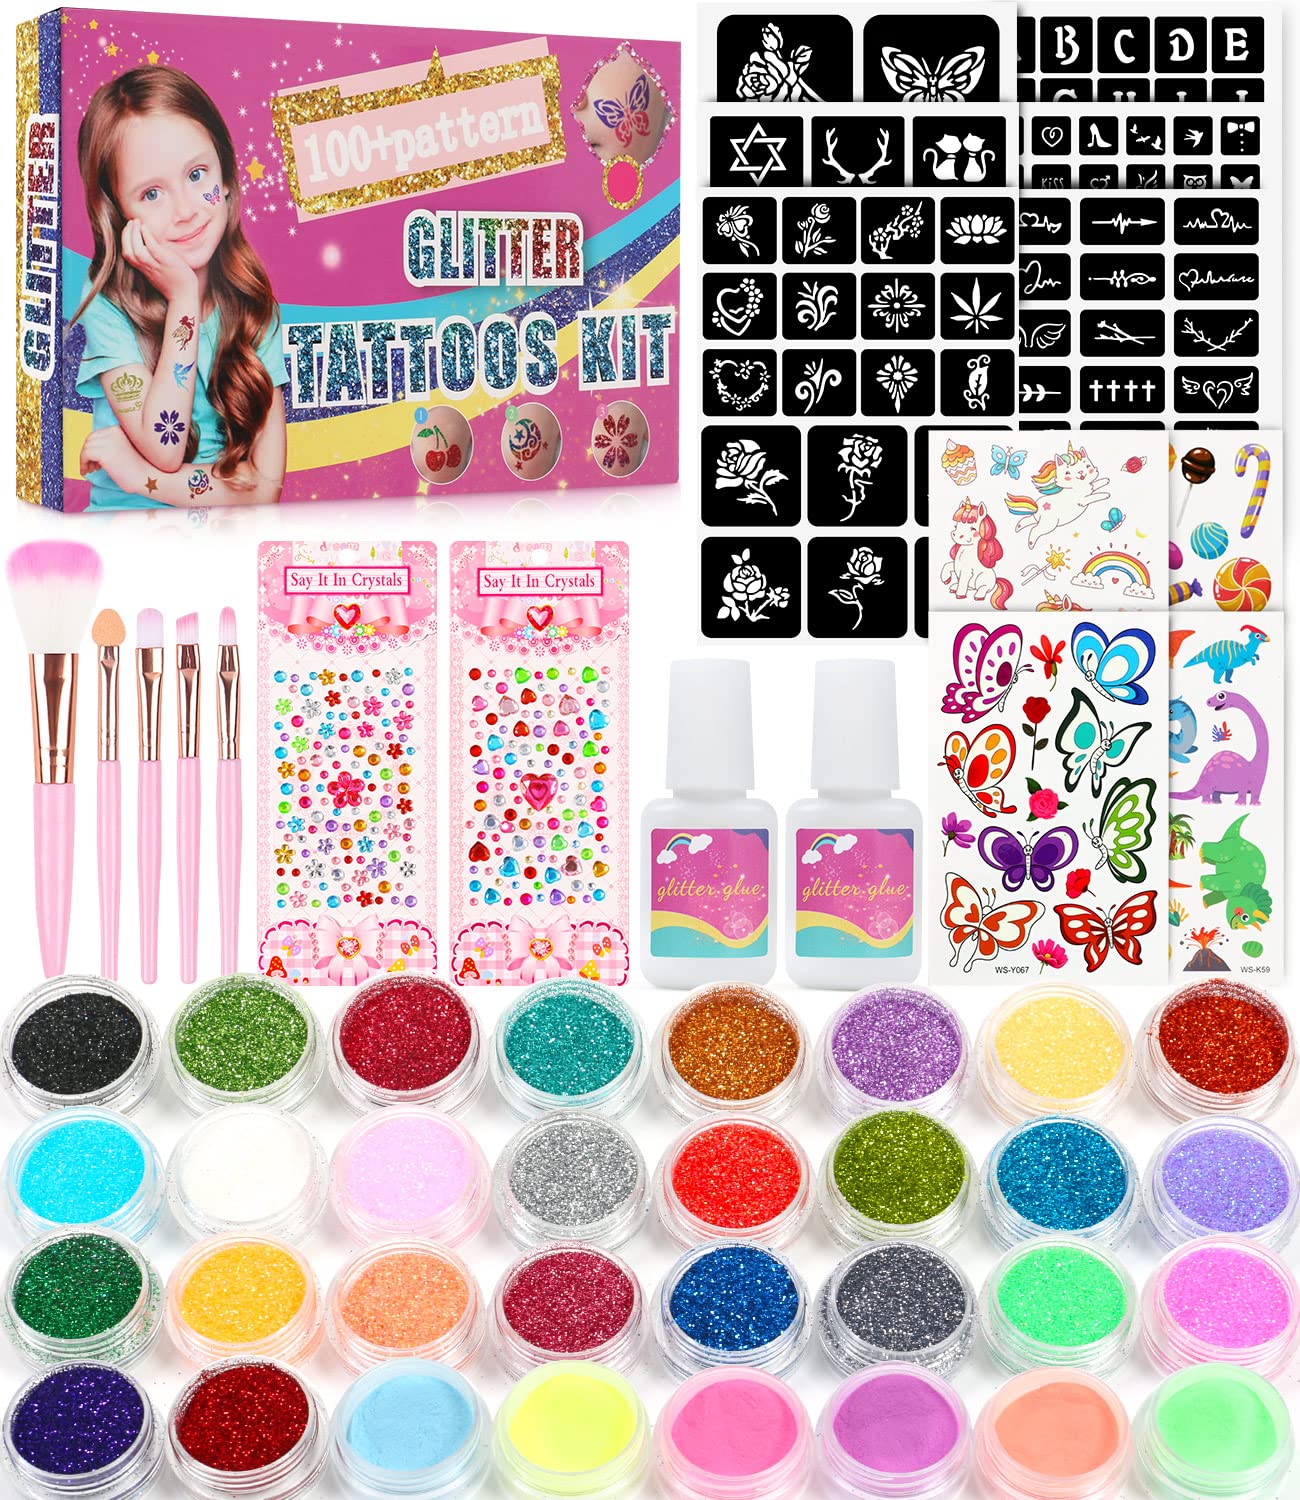 Glitter Tattoo Kit for Girls